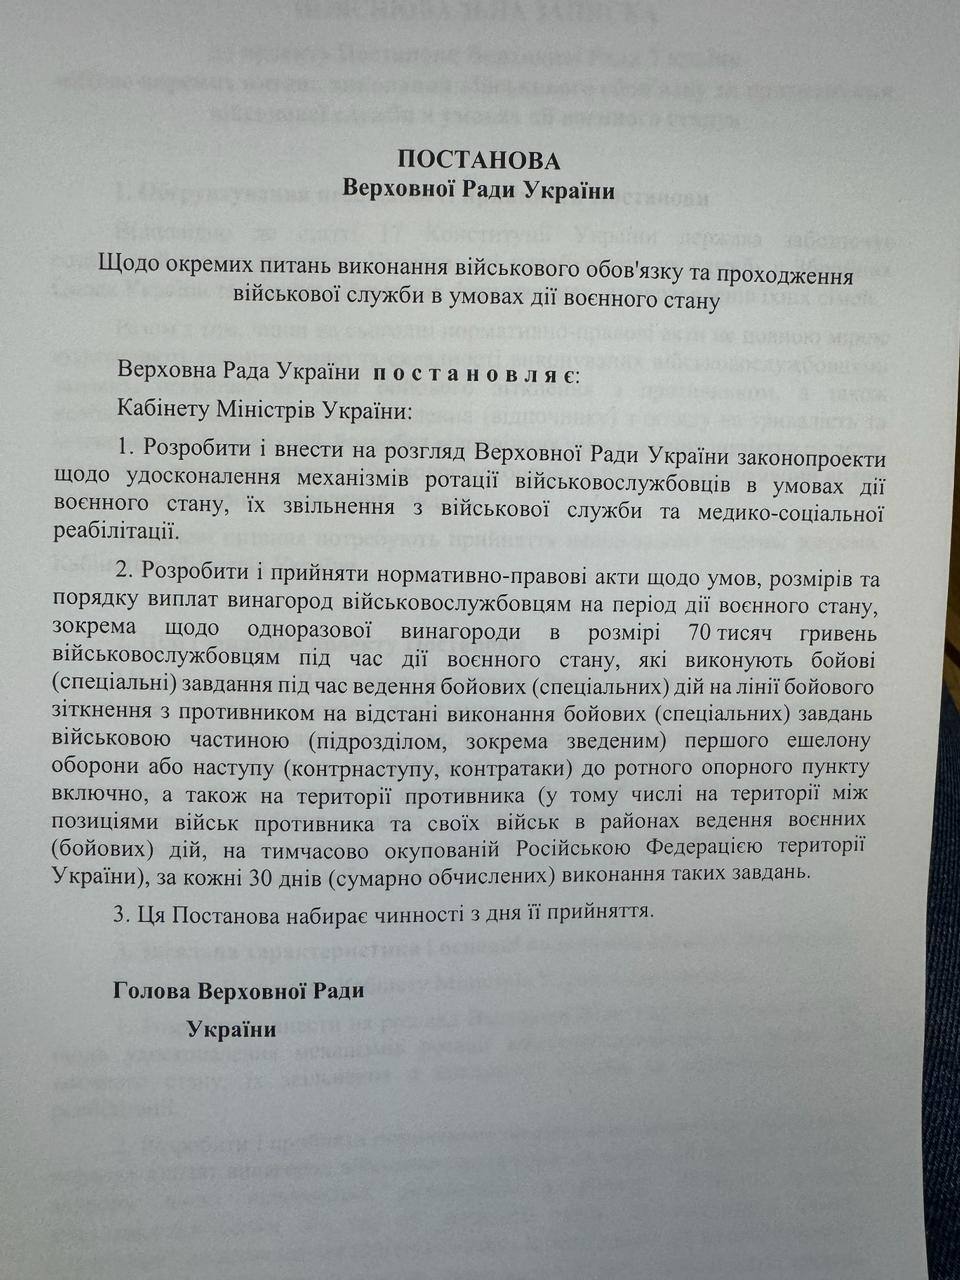 В Верховной Раде поддержали постановление, обязывающее Кабинет министров ввести выплаты в 70 тыс. грн для воинов, находящихся на передовой